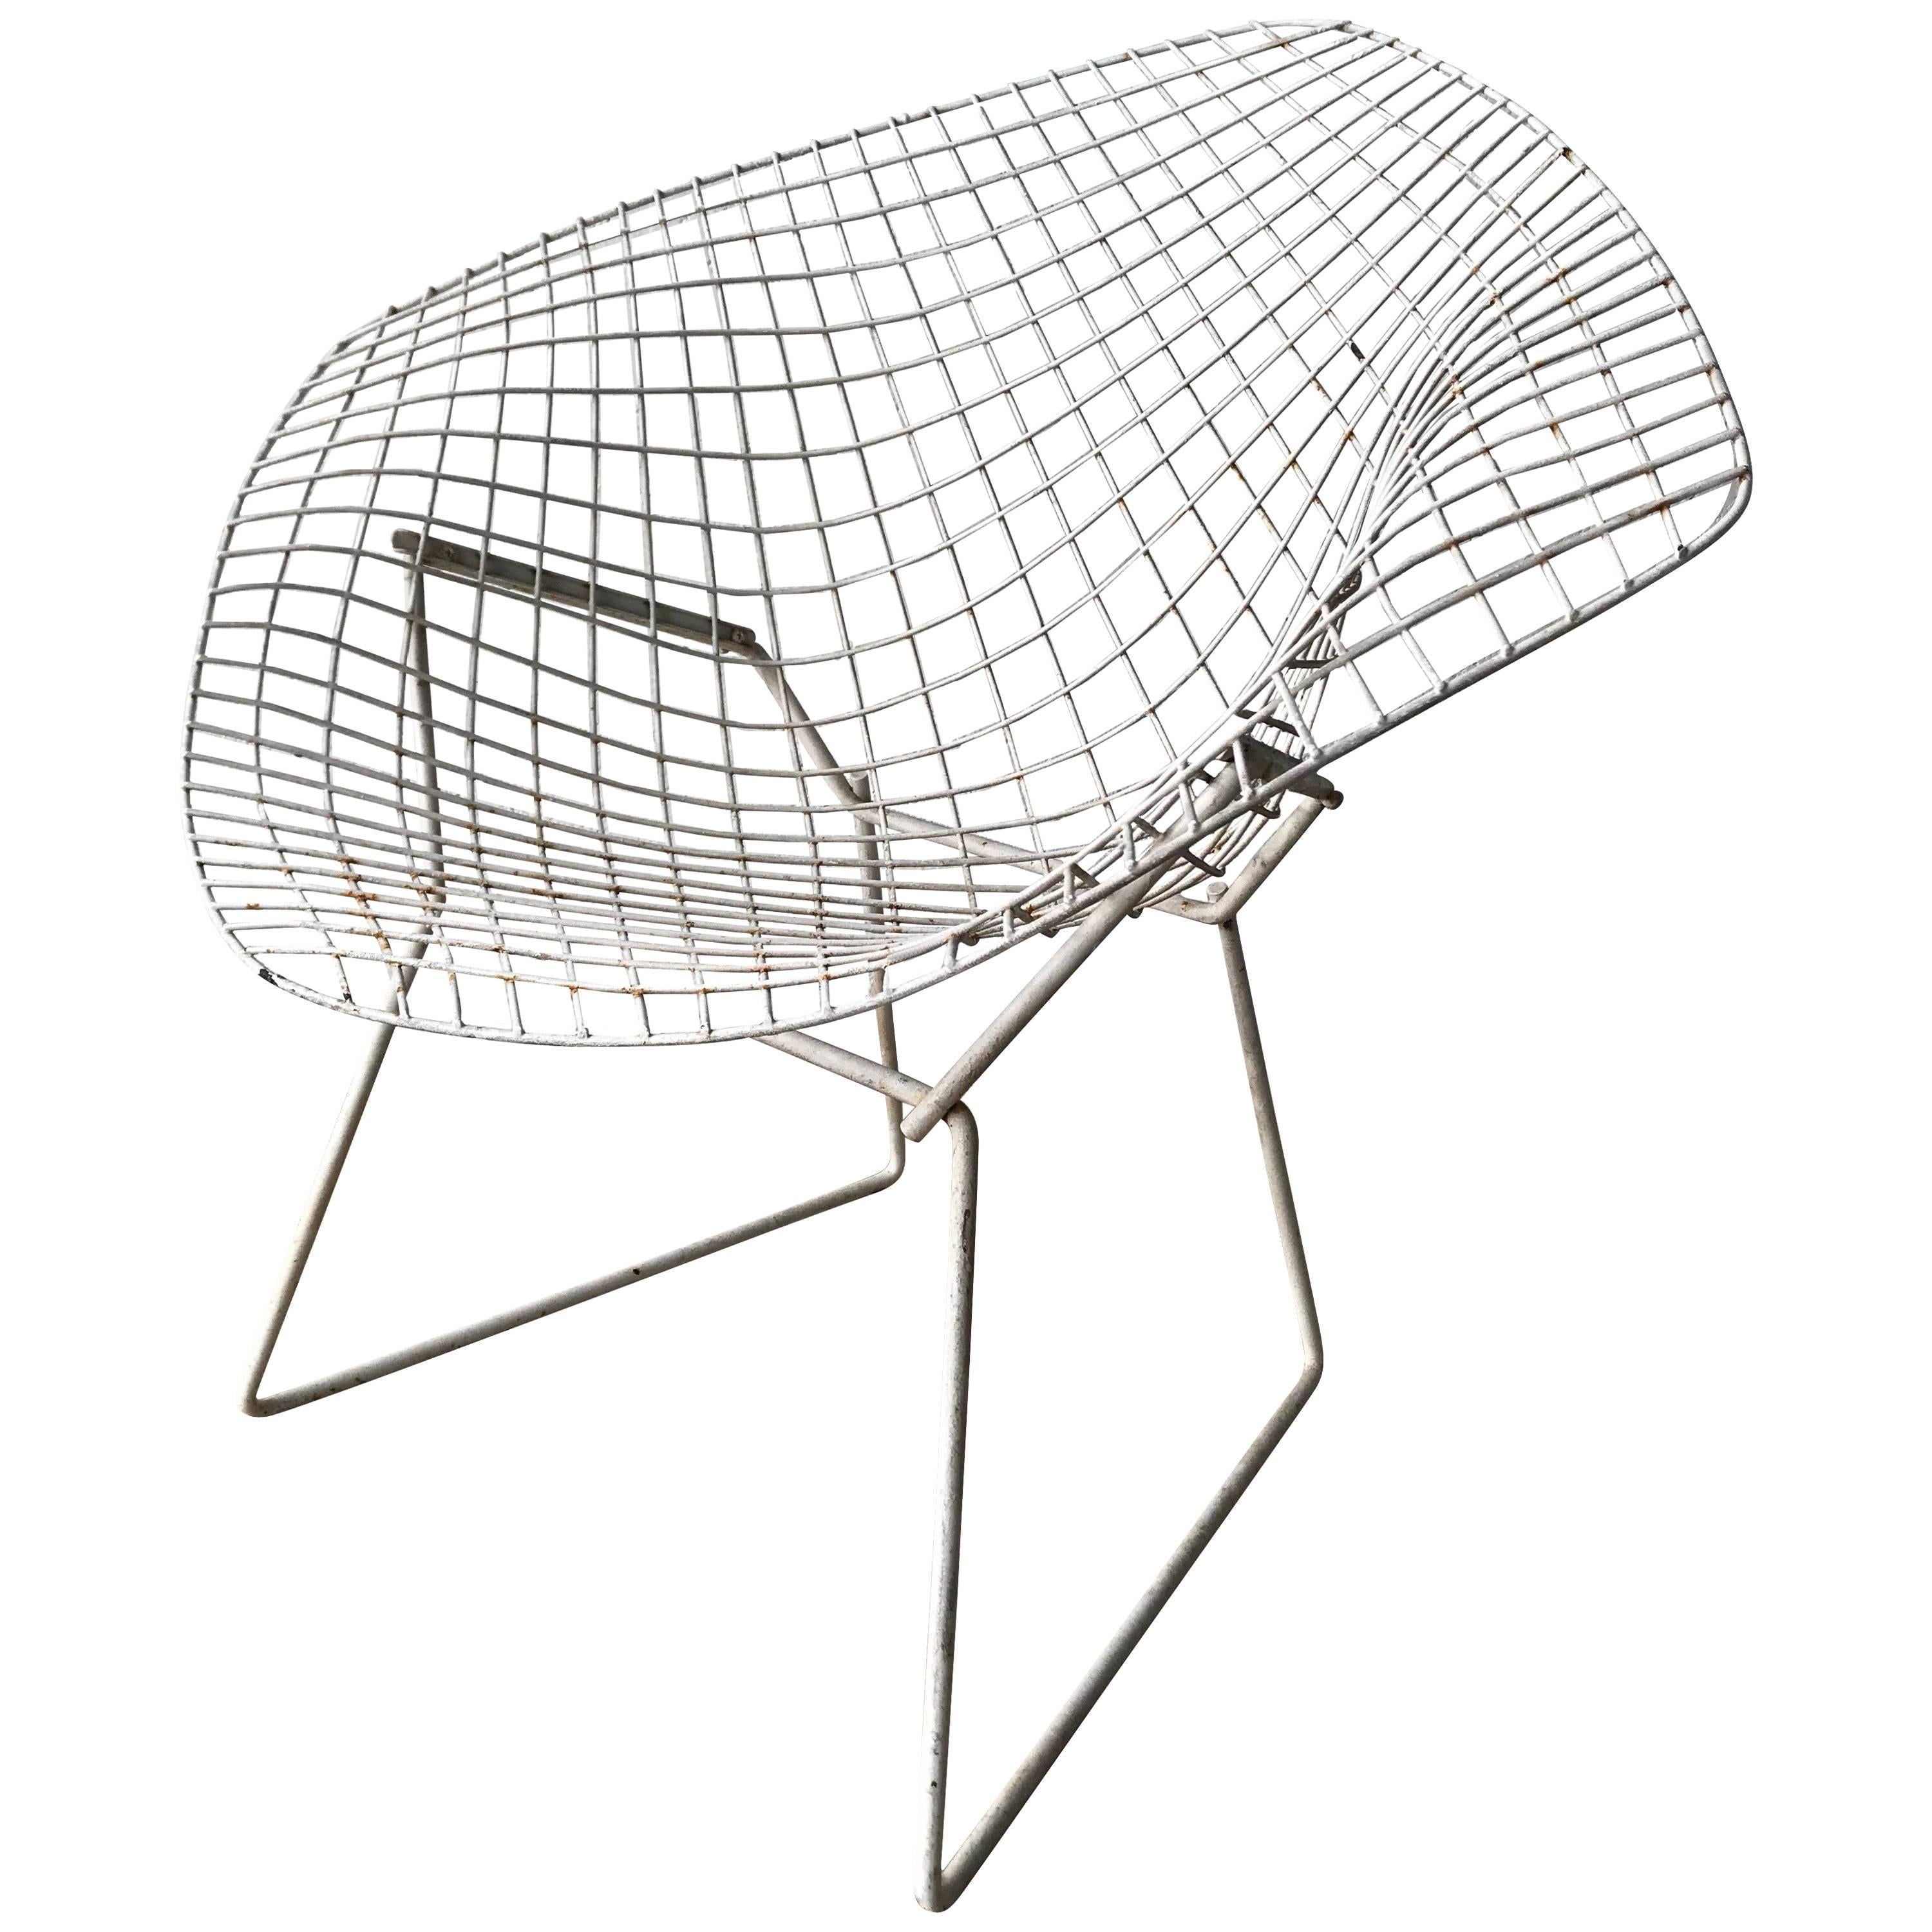 Original Harry Bertoia “Diamond” Chair